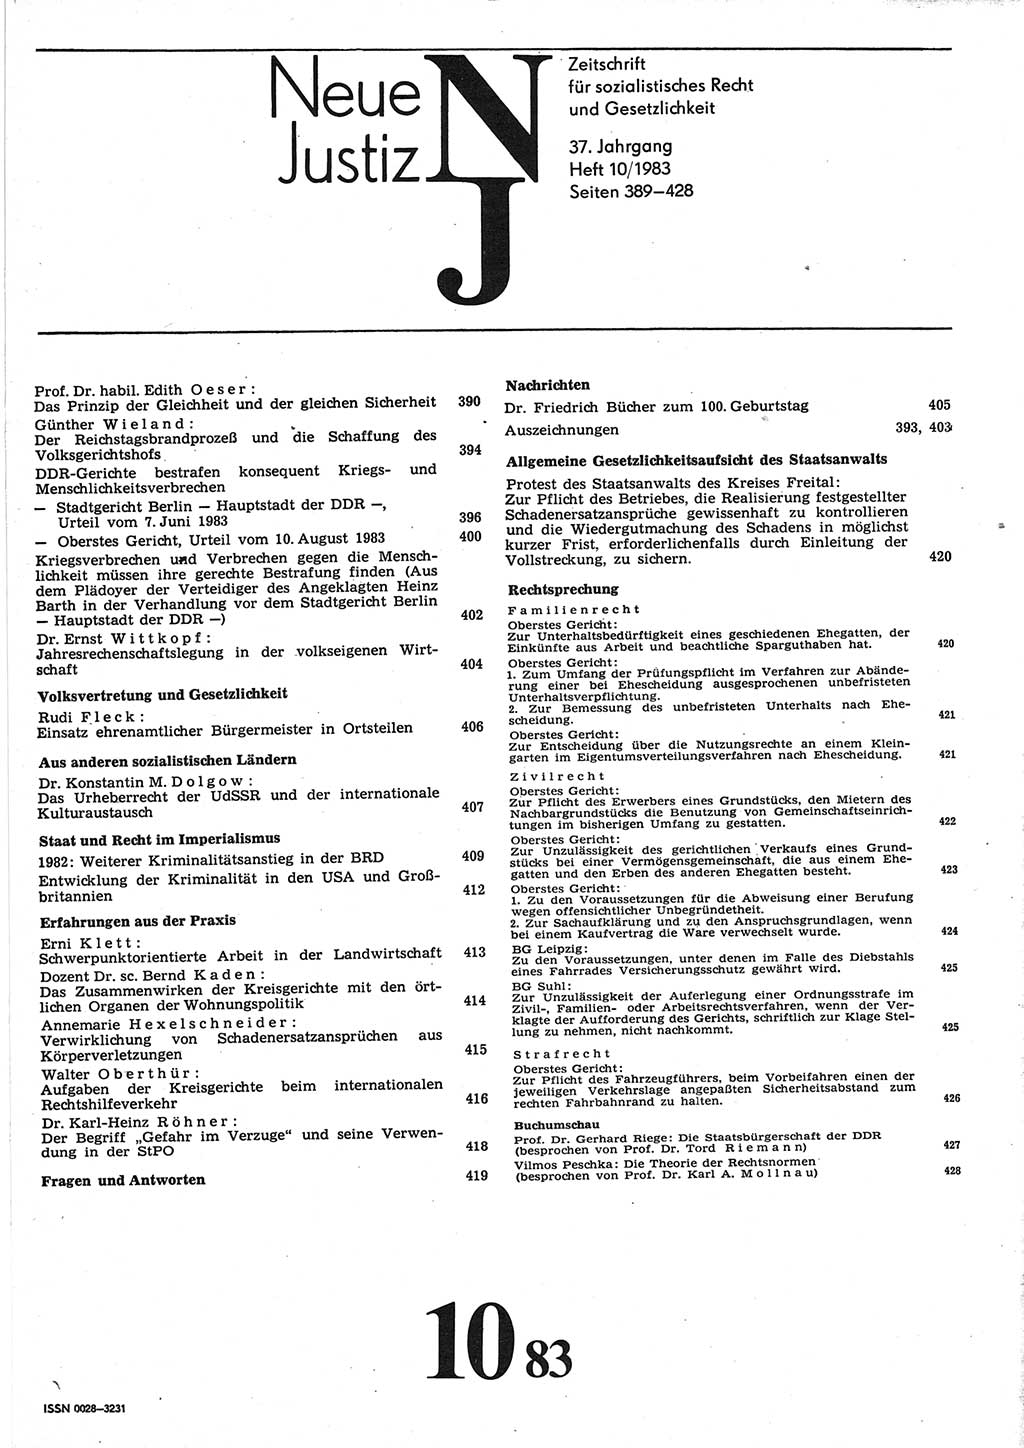 Neue Justiz (NJ), Zeitschrift für sozialistisches Recht und Gesetzlichkeit [Deutsche Demokratische Republik (DDR)], 37. Jahrgang 1983, Seite 389 (NJ DDR 1983, S. 389)